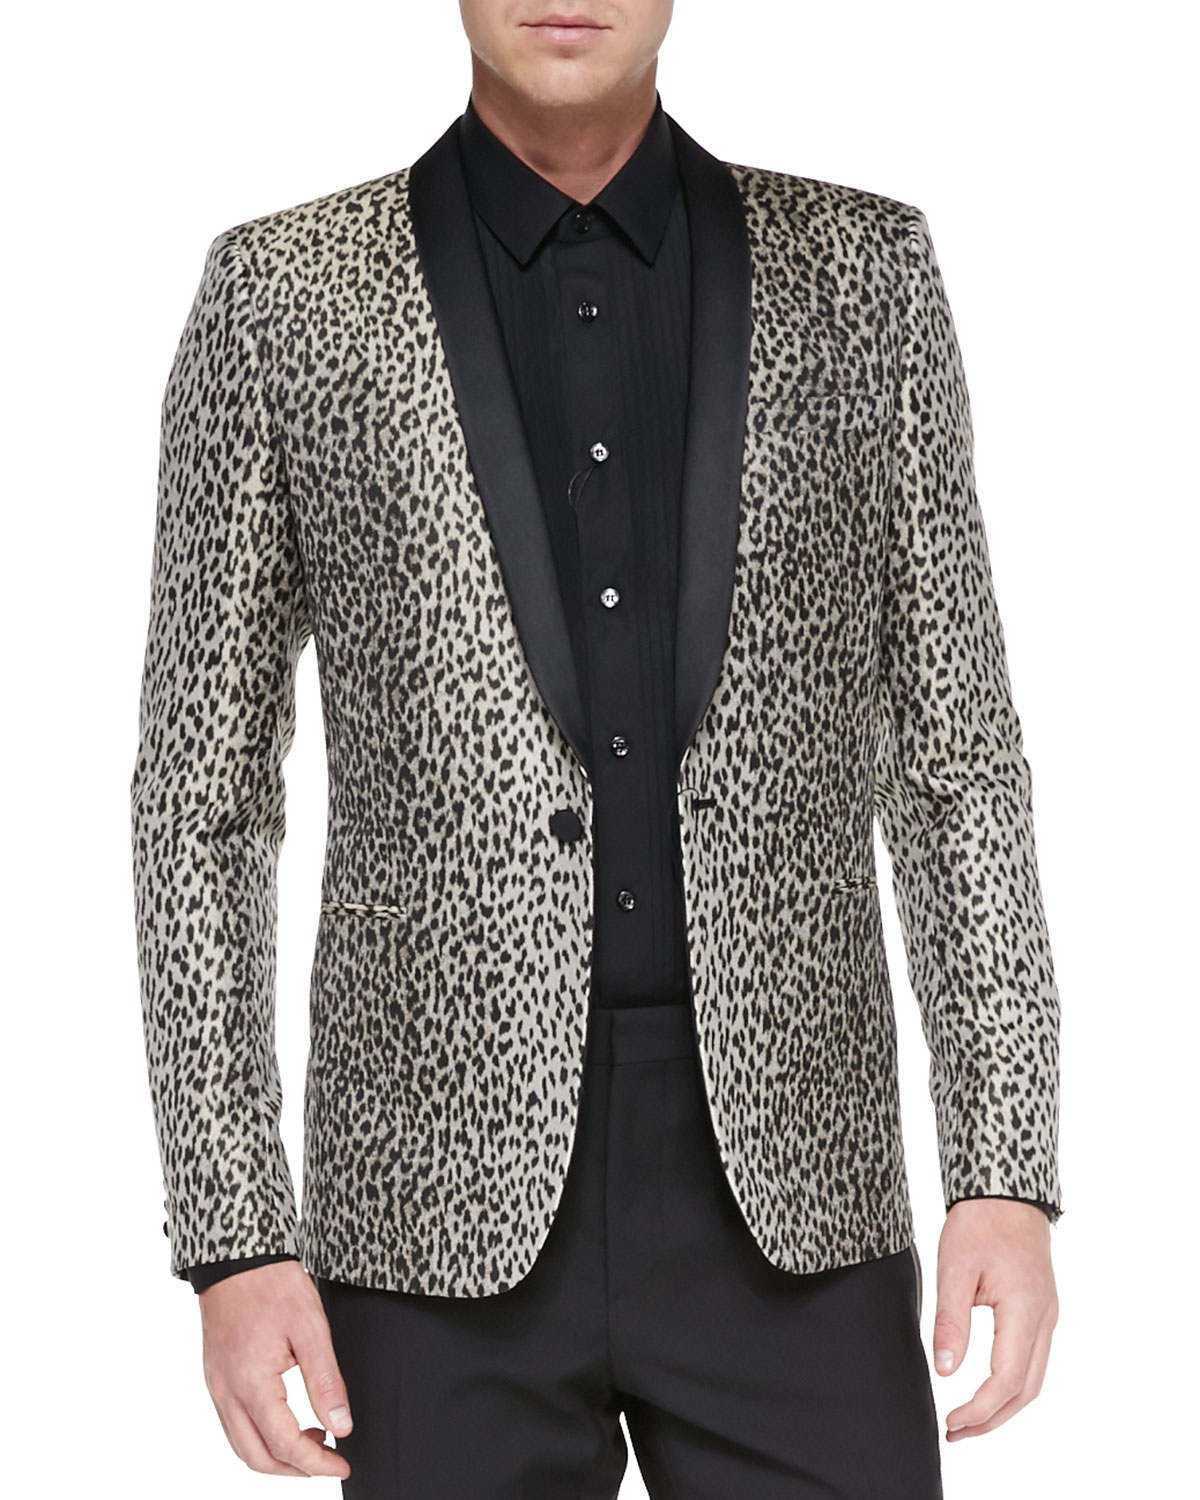 Lyst - Saint Laurent Leopard Jacquard Tuxedo Jacket for Men